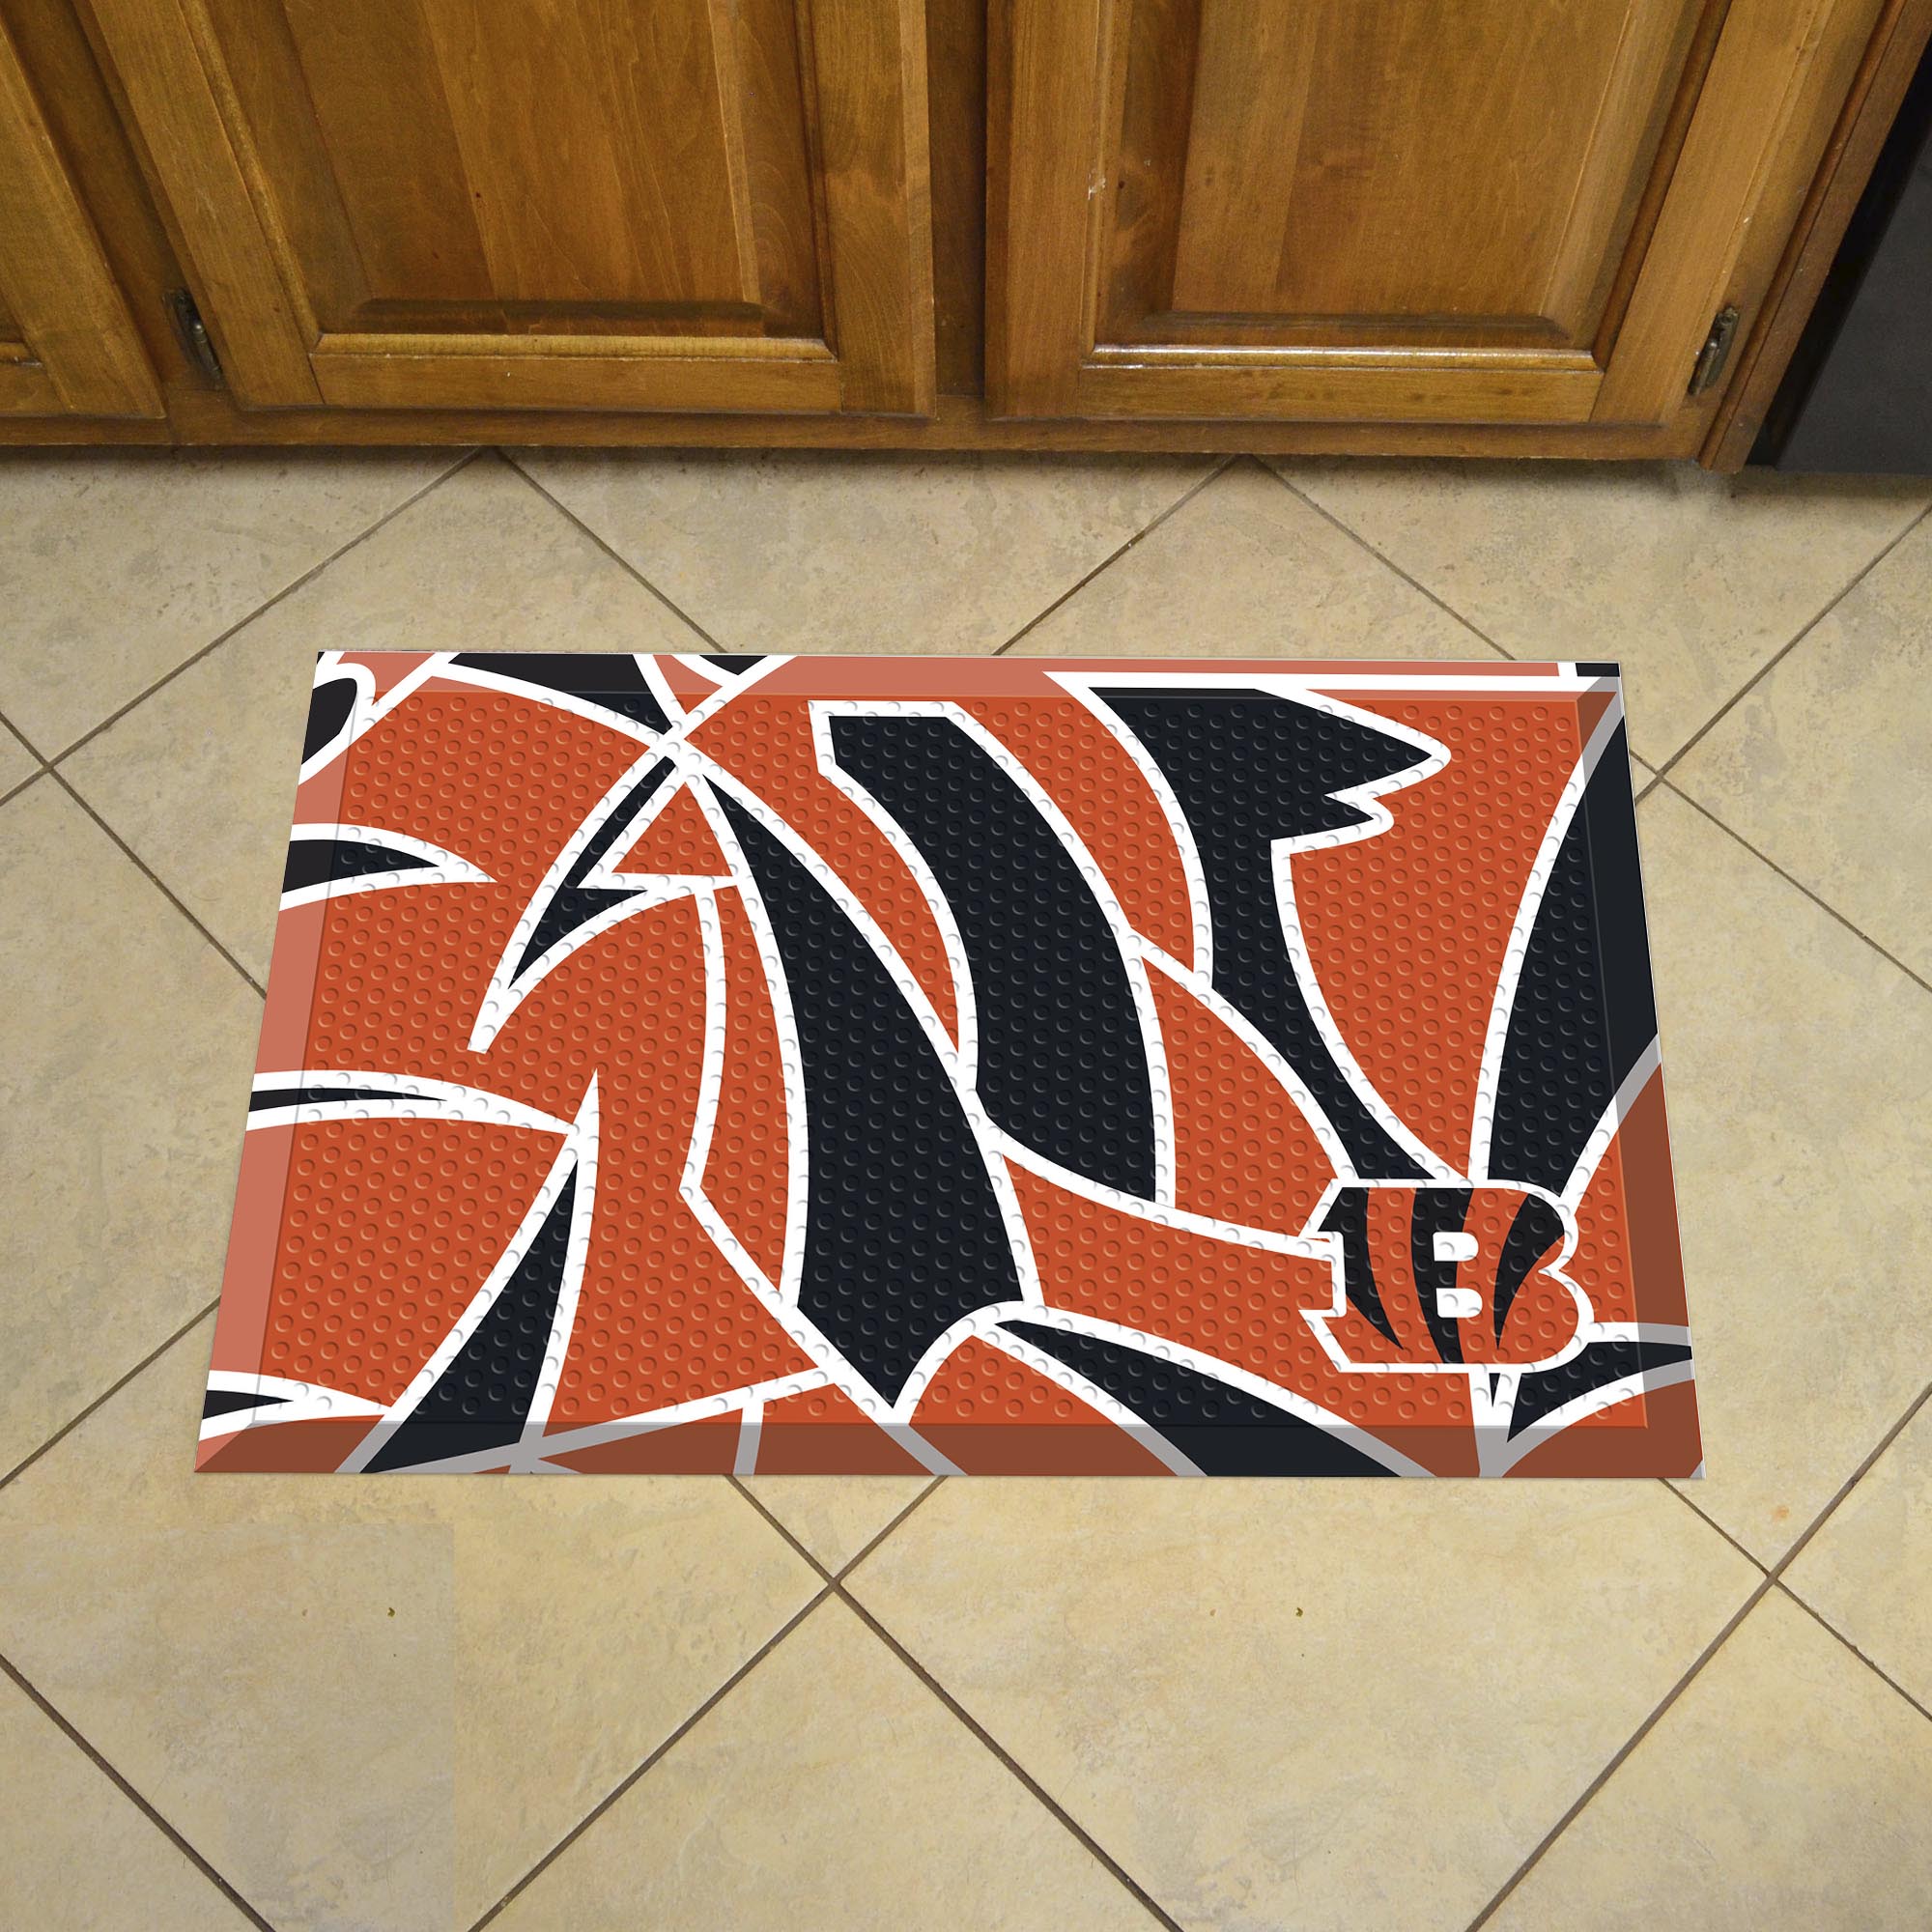 Cincinnati Bengals Quick Snap Scrapper Doormat - 19 x 30 rubber